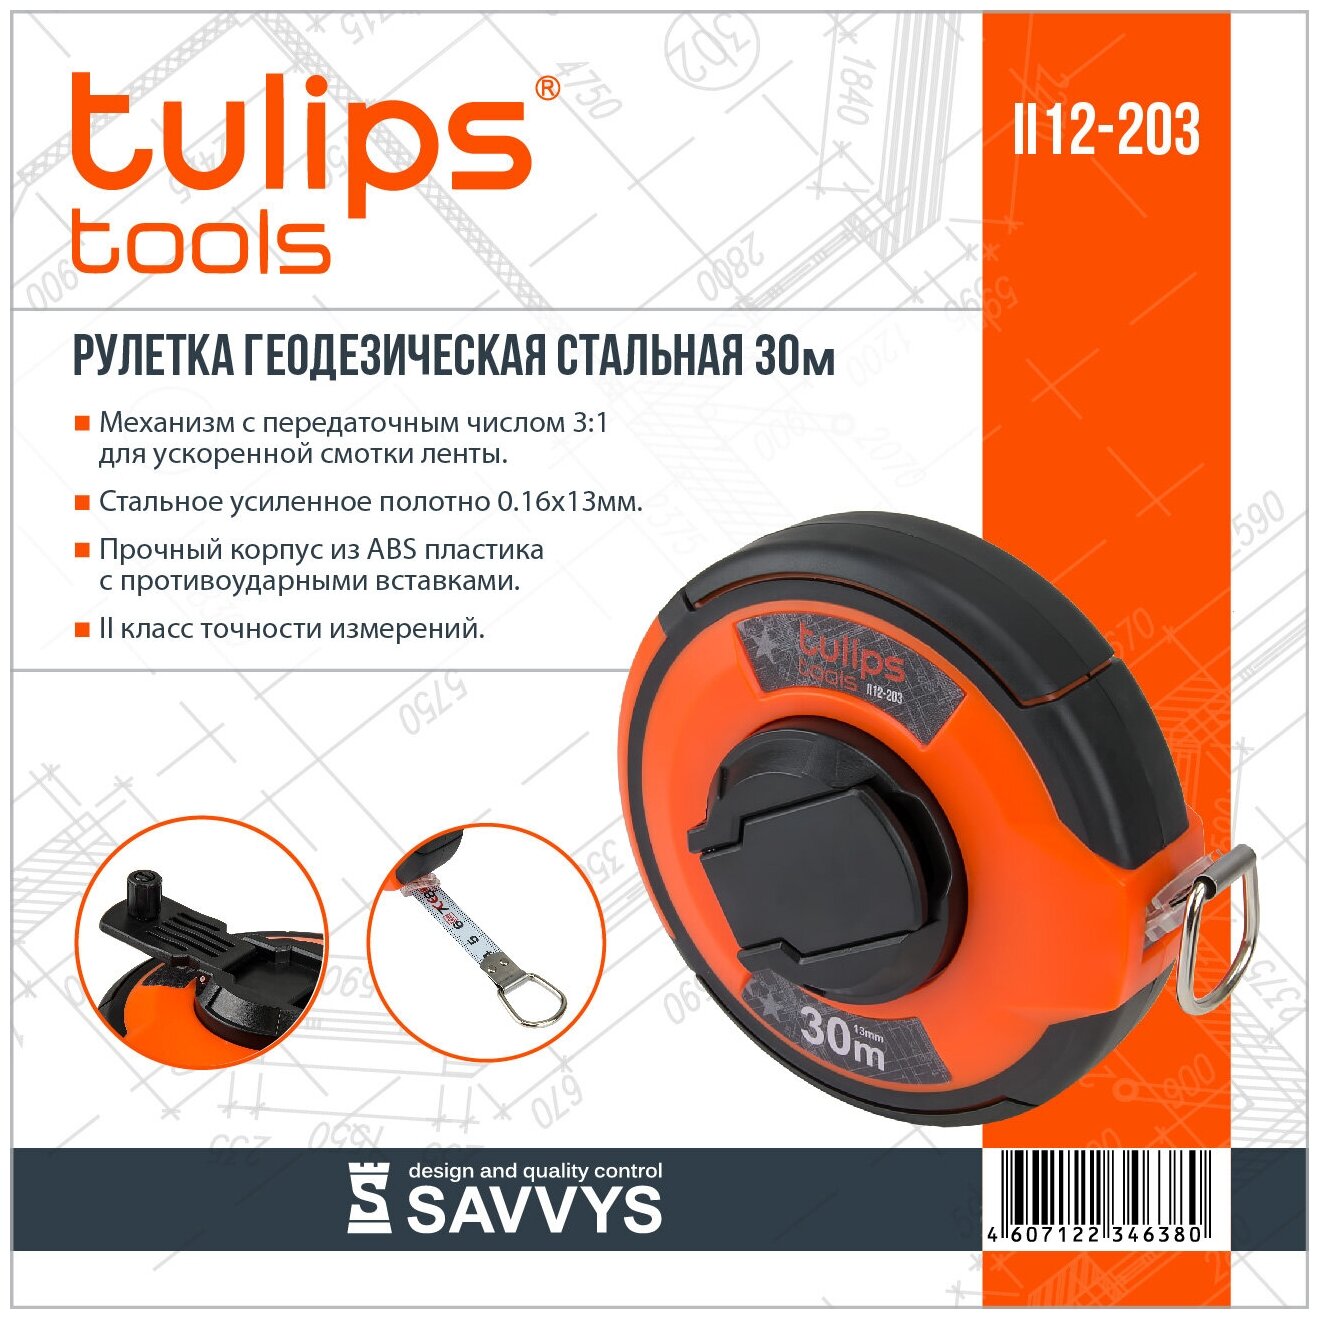 Рулетка геодезическая Tulips tools II12-203, 30м/13мм, стальная.